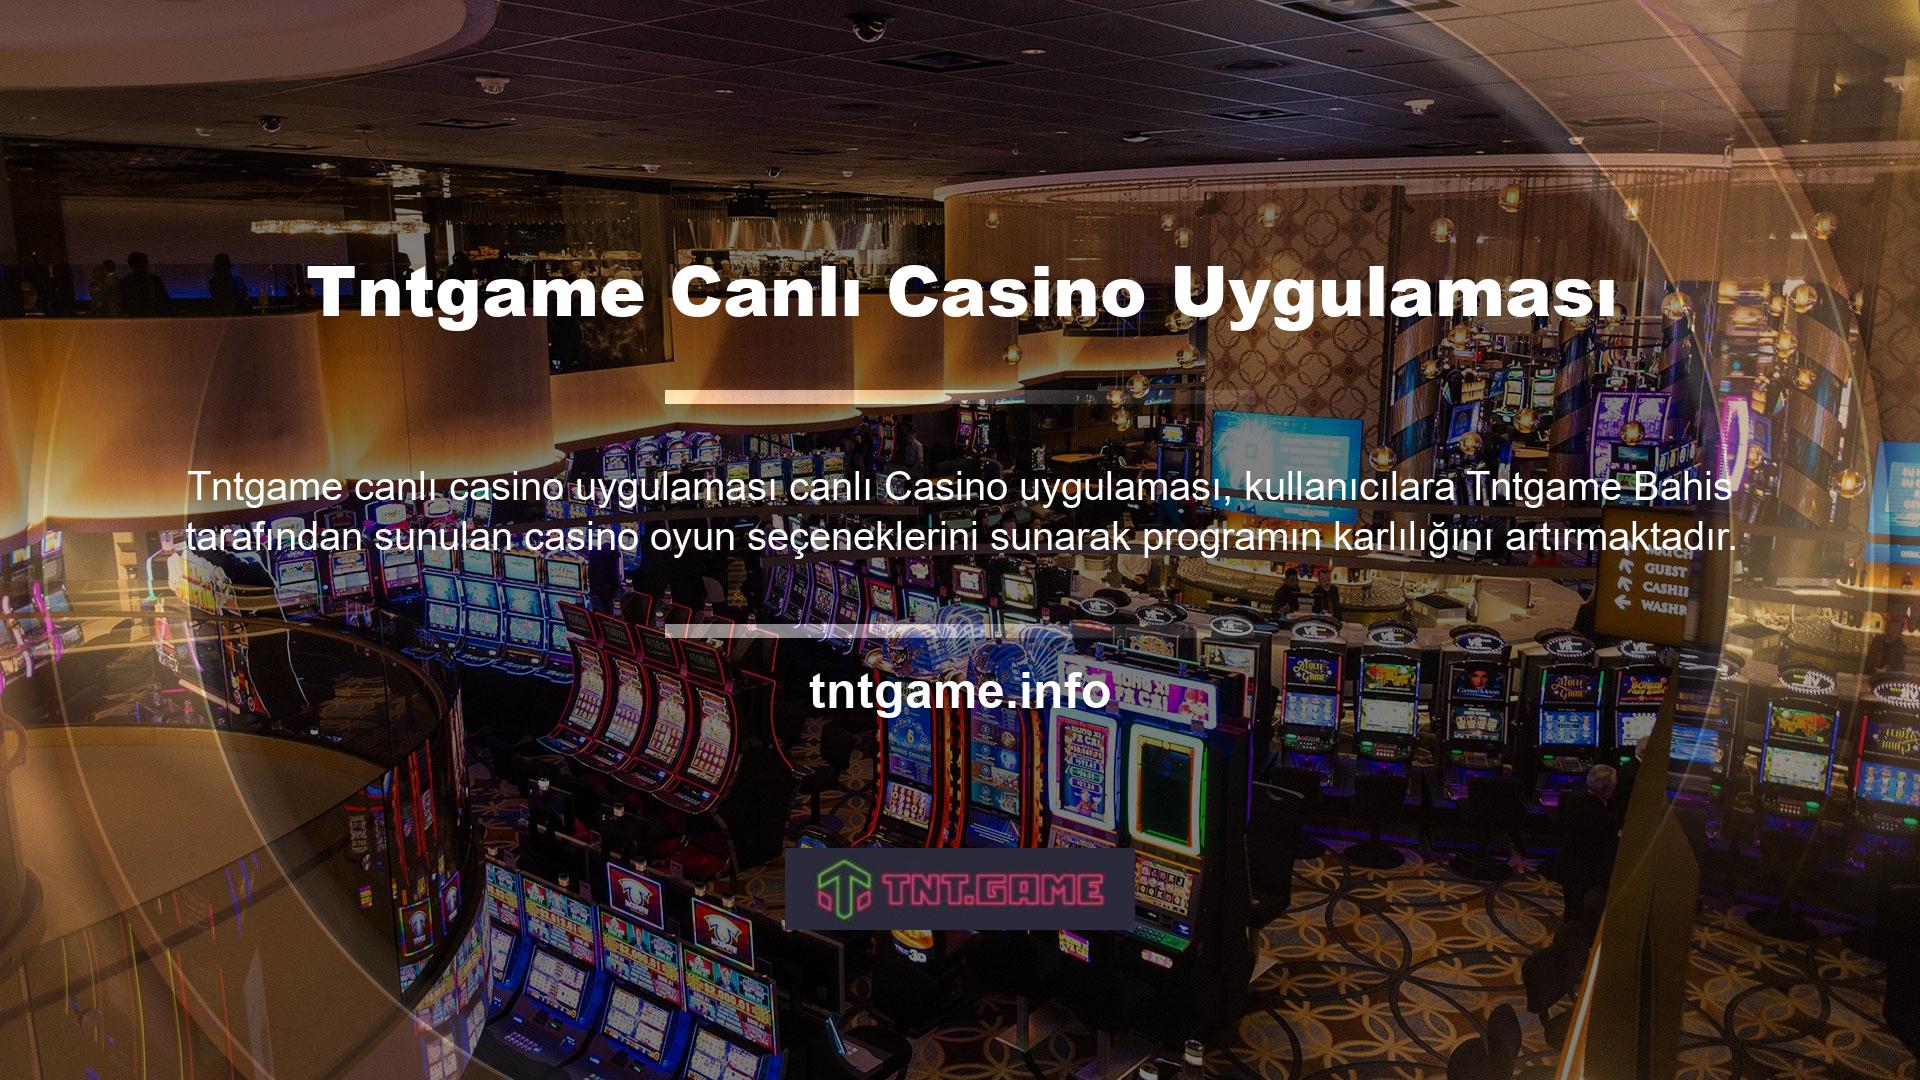 Canlı casino uygulamaları, kullanıcılara canlı rakipler arasında bahis yapma seçeneği sunar